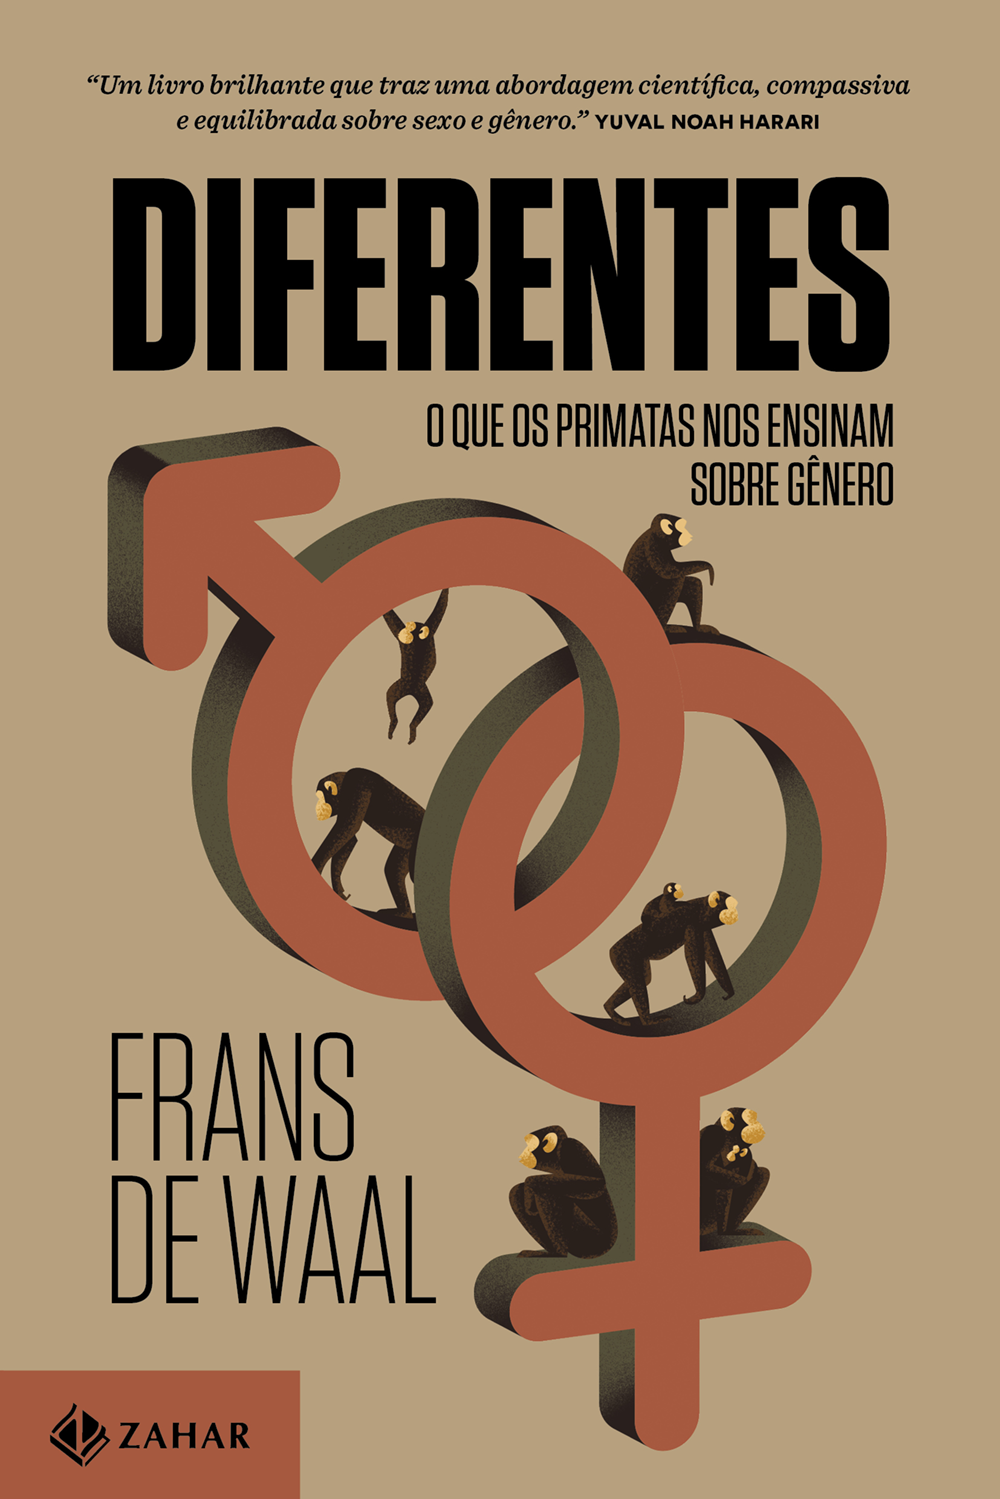 Capa do livro 'Diferentes' tem ilustração de diversos macacos caminhando ou sentados sobre os dois símbolos que representam o masculino e o feminino